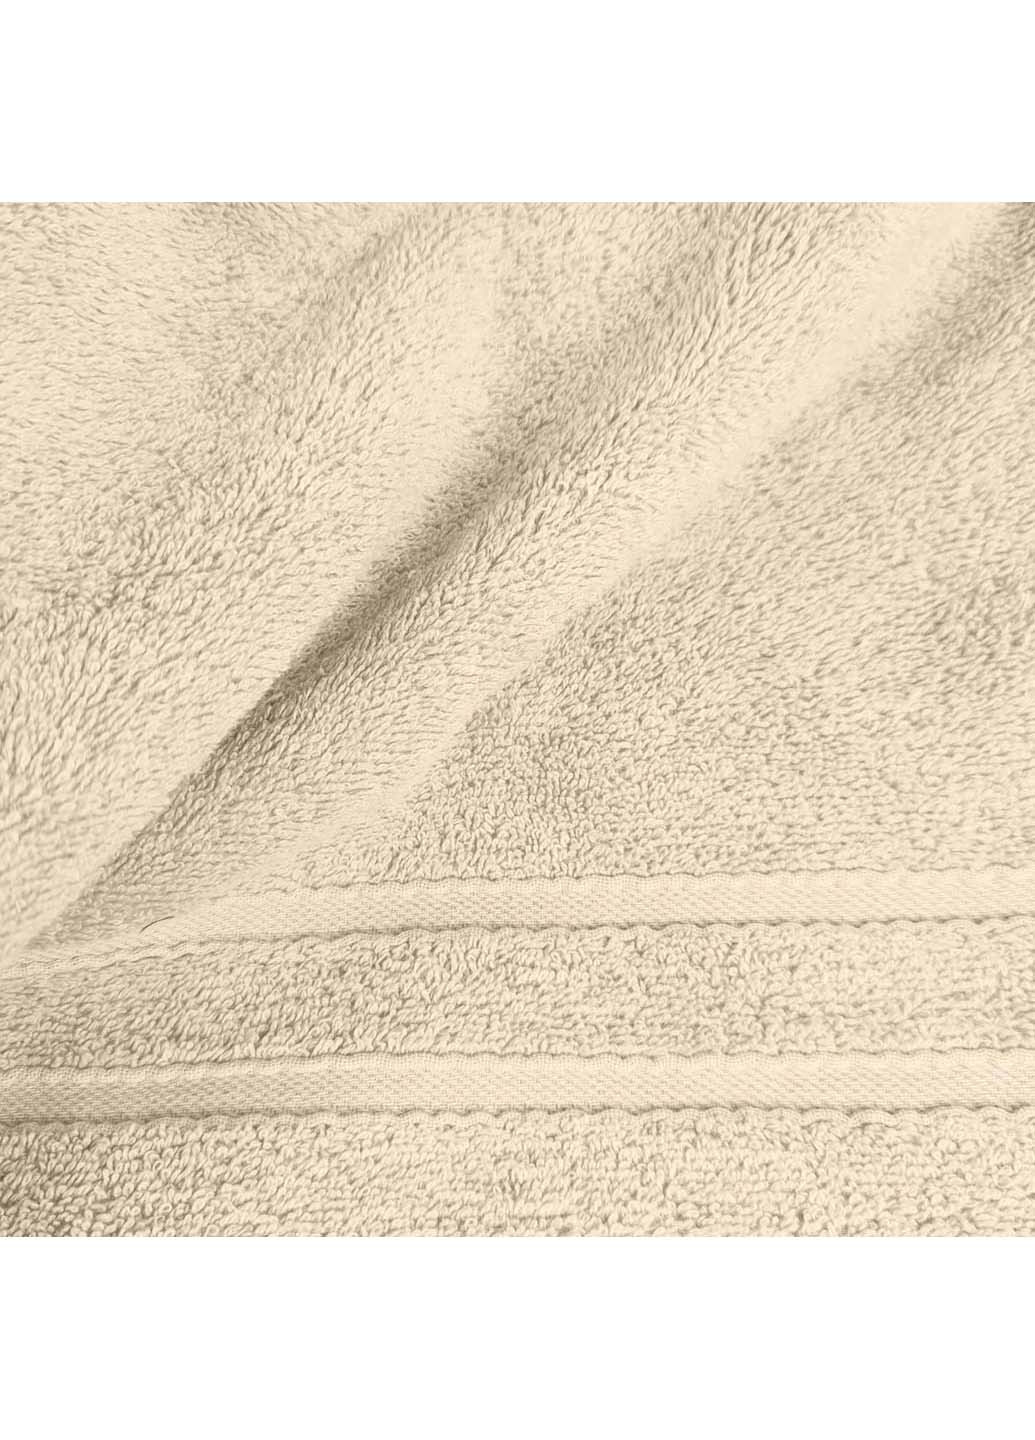 Cosas полотенце махровое 30х50 см бежевый производство -